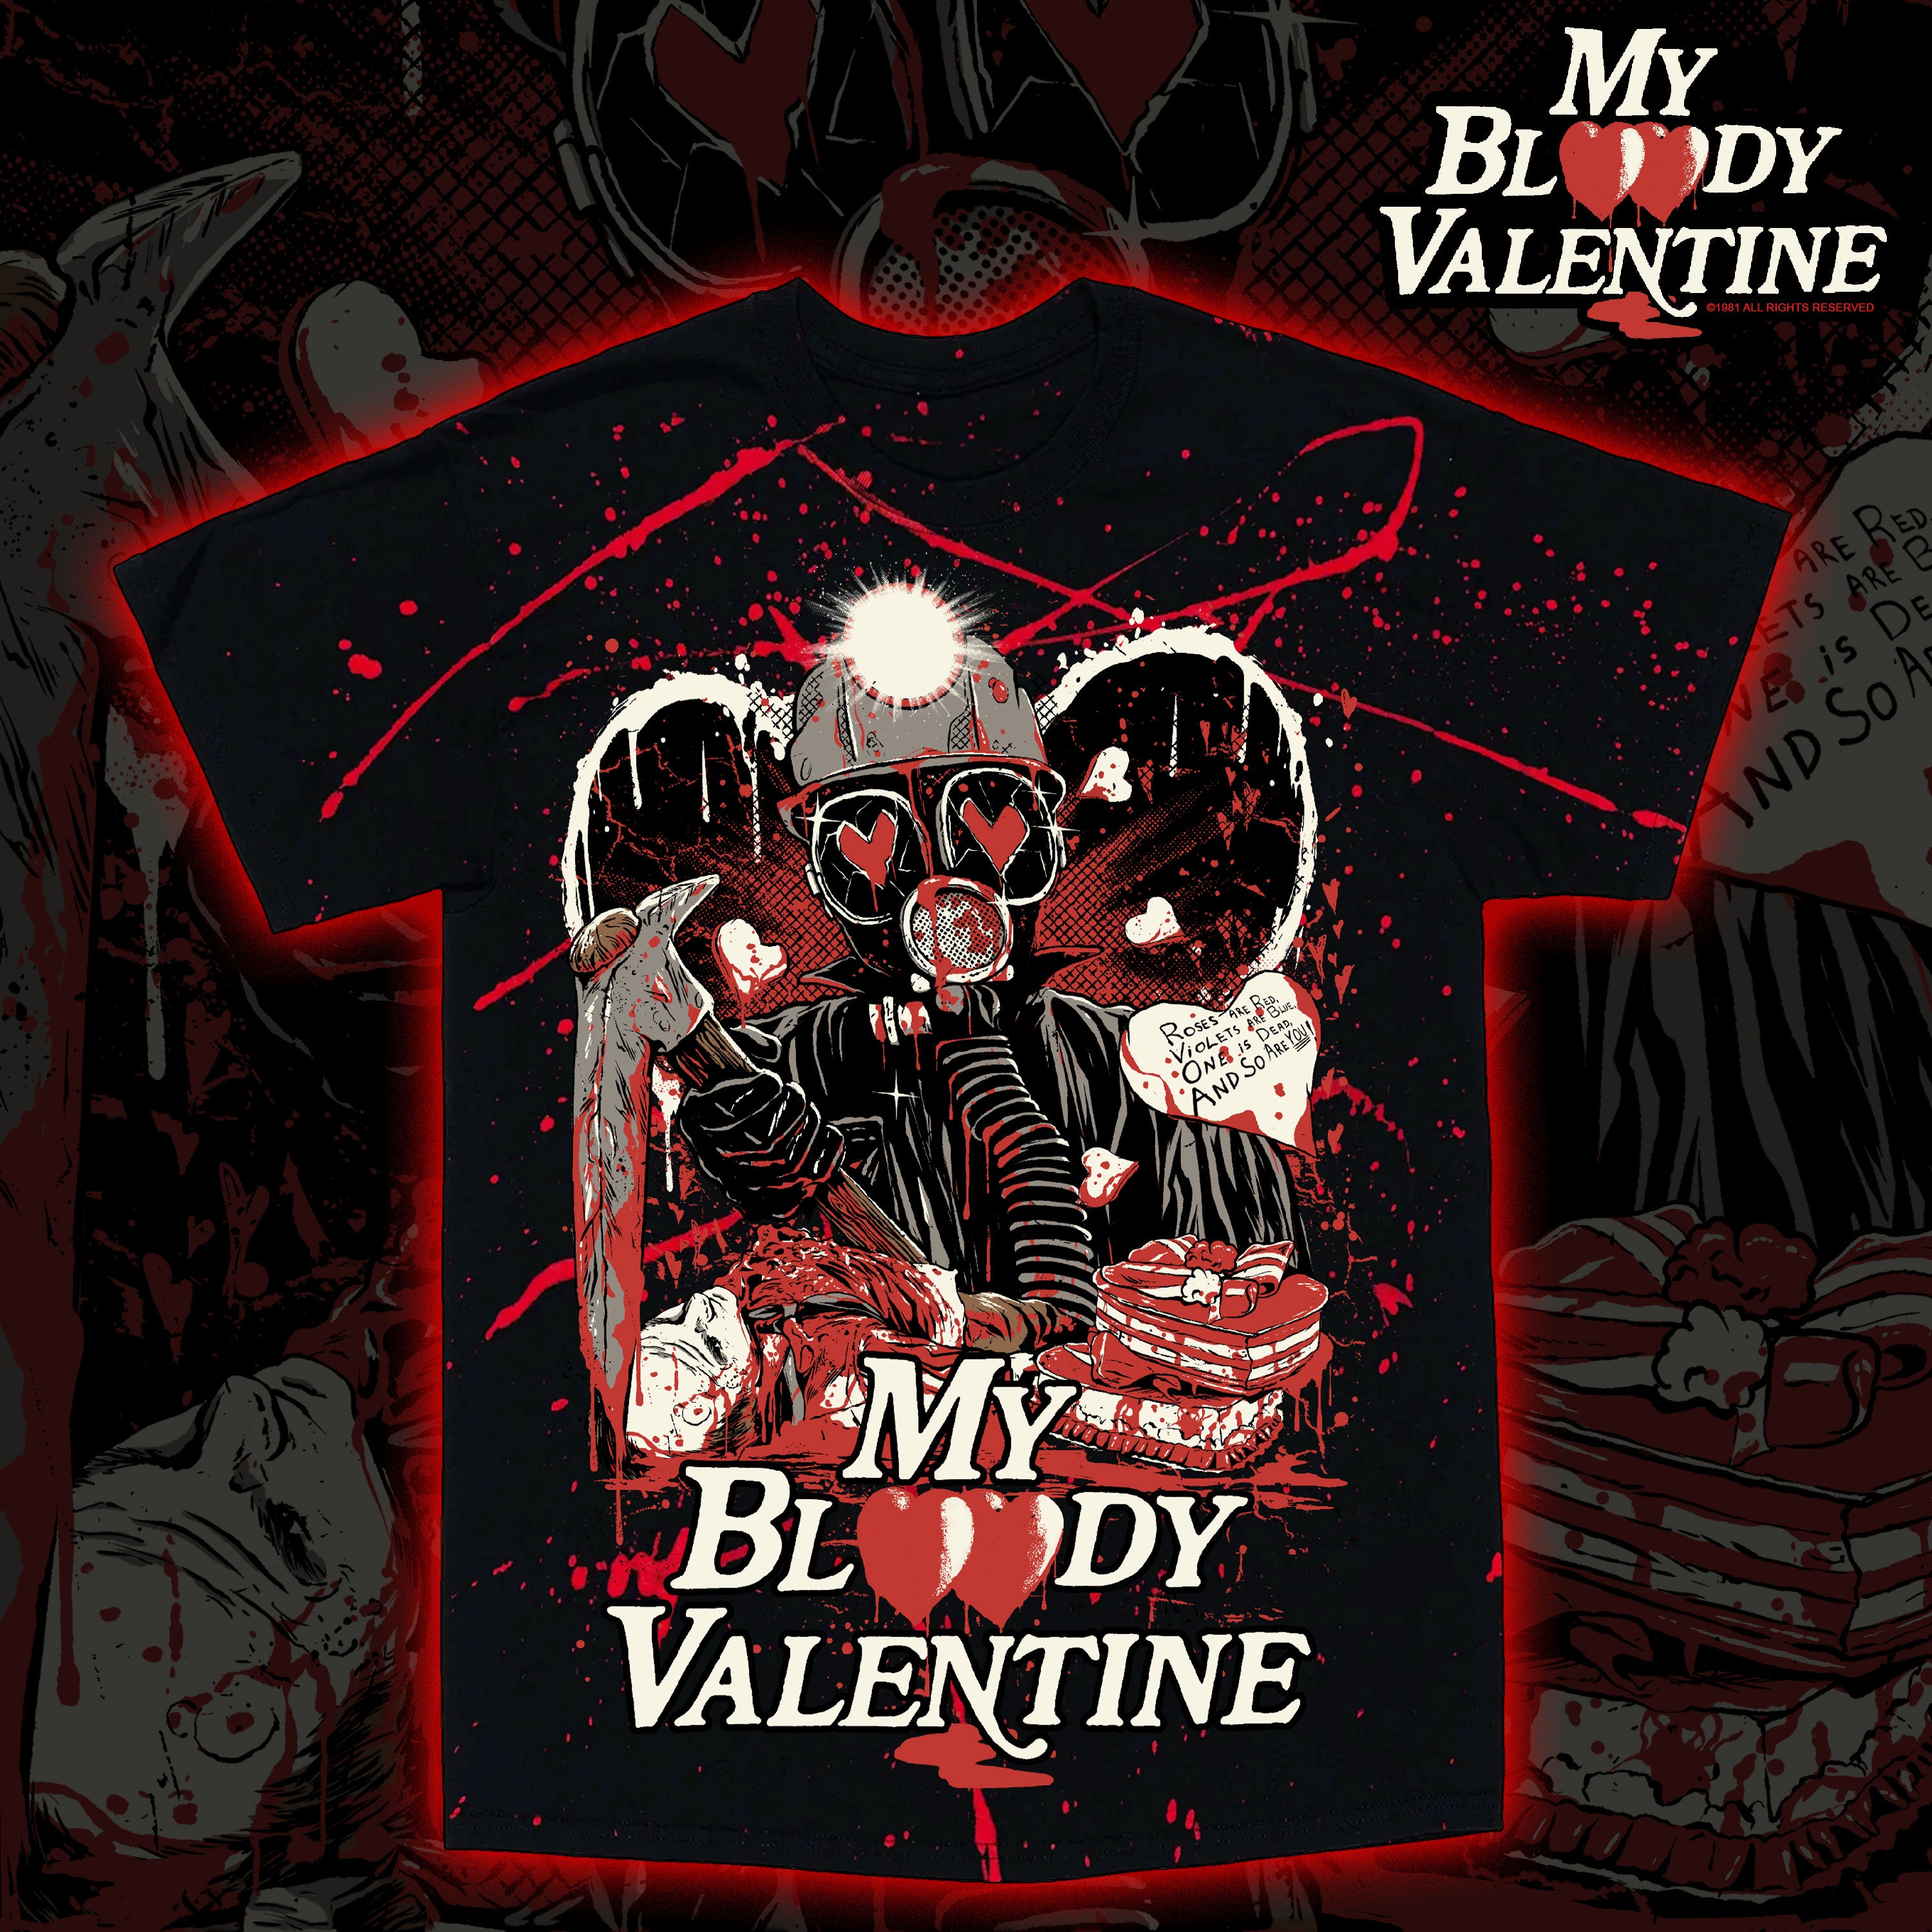 My Bloody Valentine "Beware" Tie dye